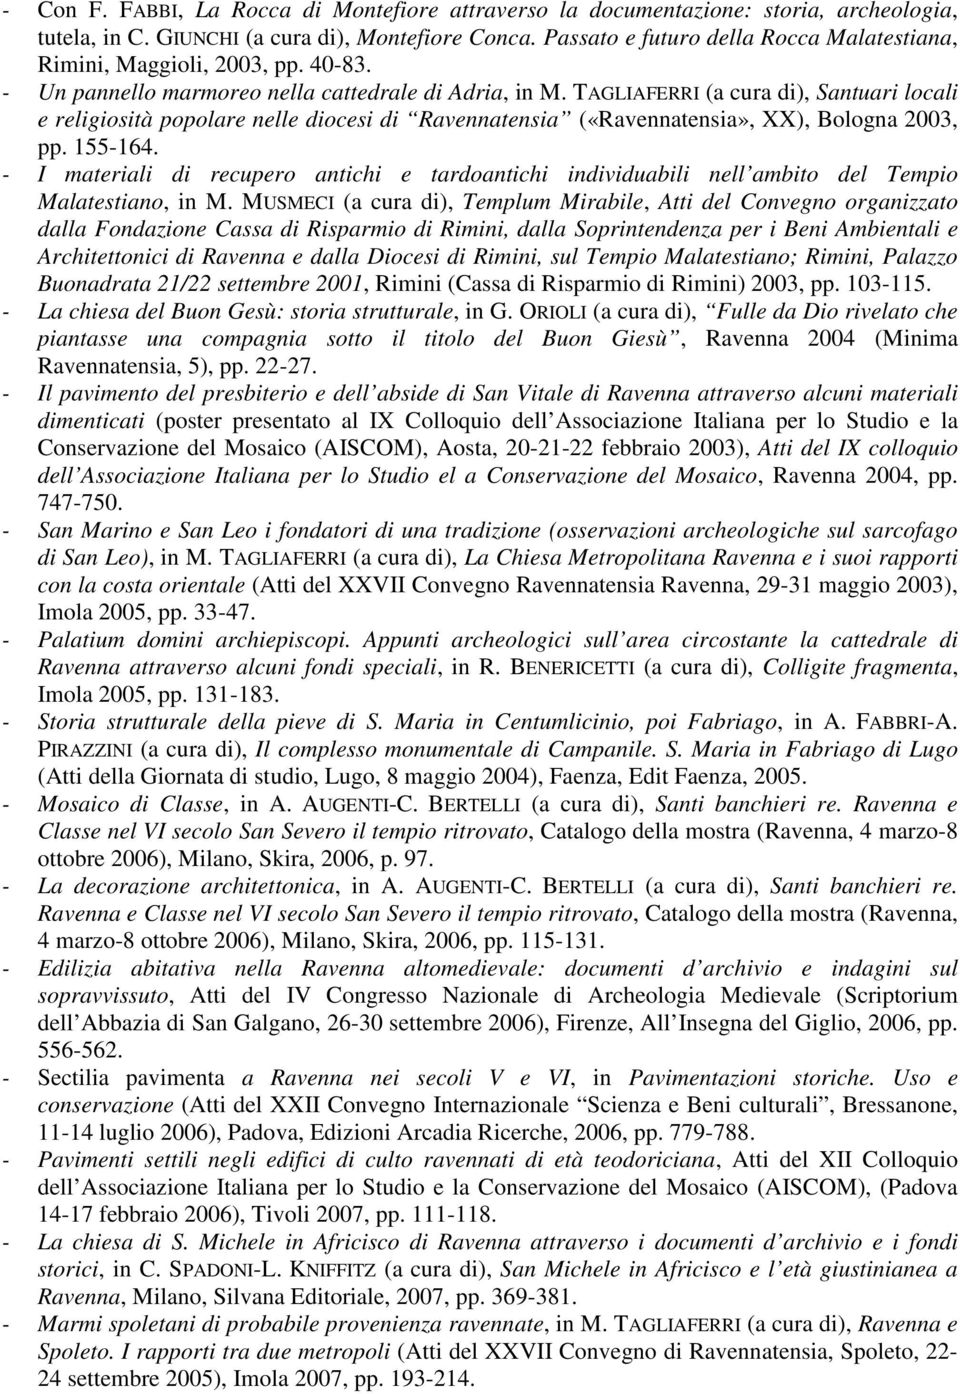 TAGLIAFERRI (a cura di), Santuari locali e religiosità popolare nelle diocesi di Ravennatensia («Ravennatensia», XX), Bologna 2003, pp. 155-164.